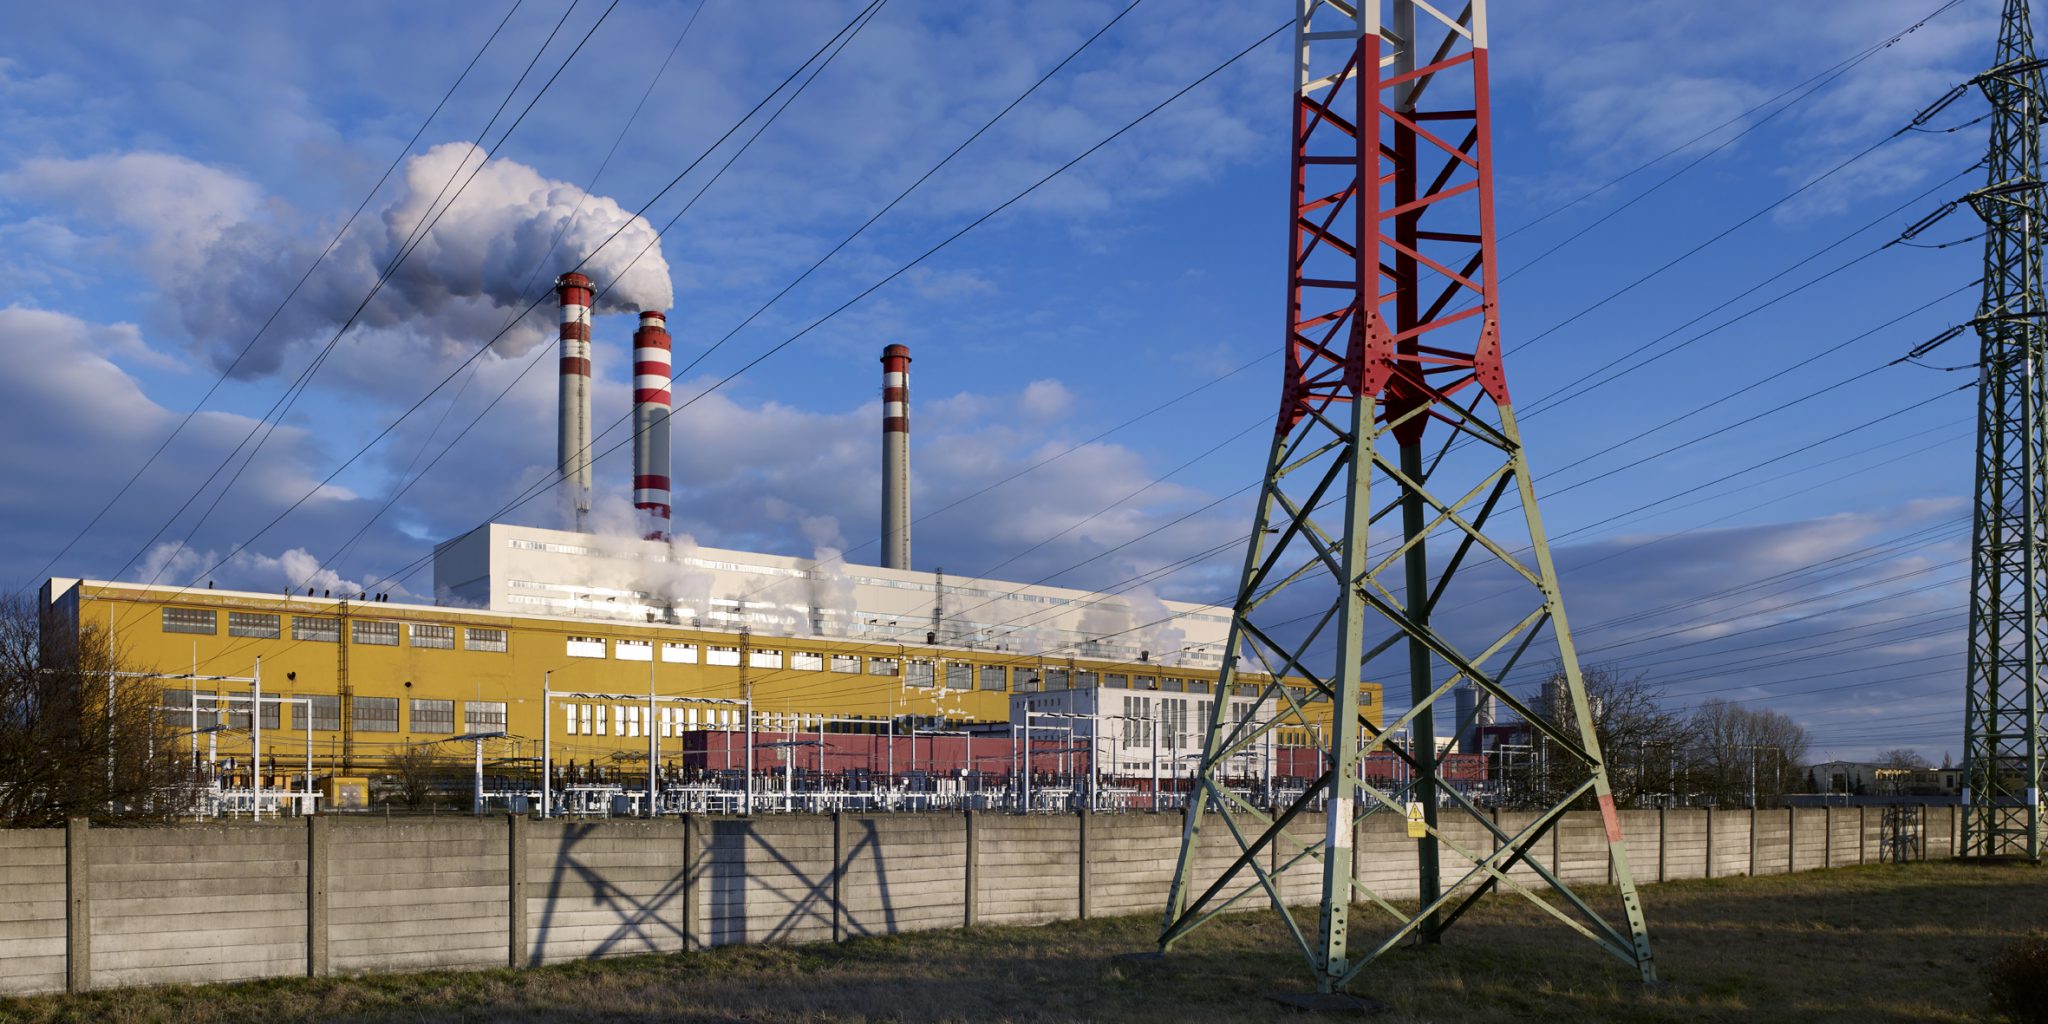 Interessante Fakten aus den EPH-Ergebnissen: Dividende über 37 Milliarden Kronen, begrenzte Auswirkungen der Windfall-Steuer und Streit mit russischem Kohlelieferanten